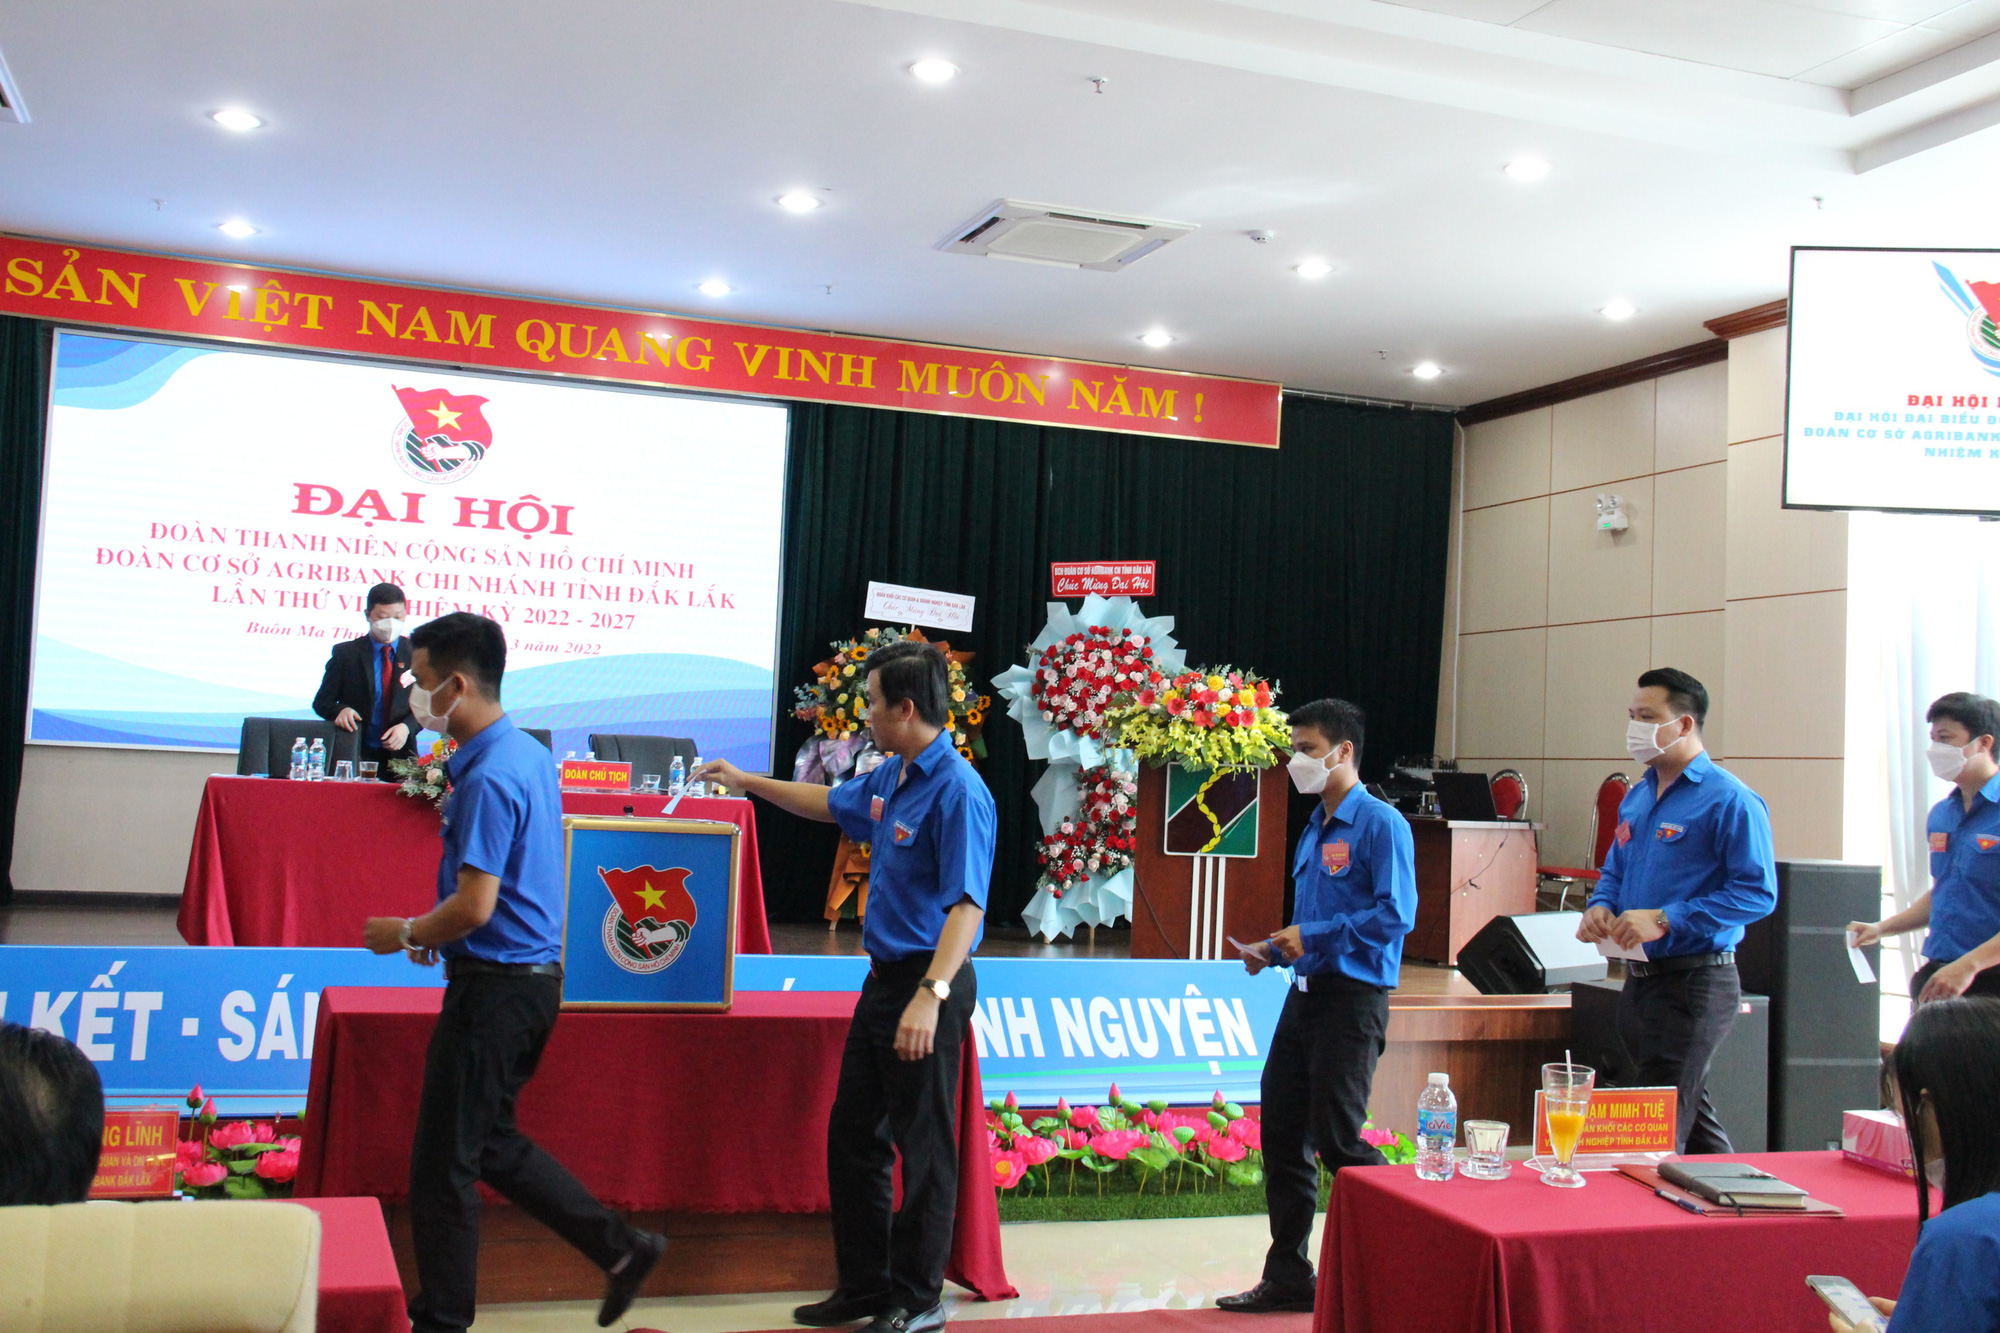 Đoàn cơ sở Agribank chi nhánh tỉnh Đắk Lắk tổ chức Đại hội lần thứ VII, nhiệm kỳ 2022 - 2027 - Ảnh 2.